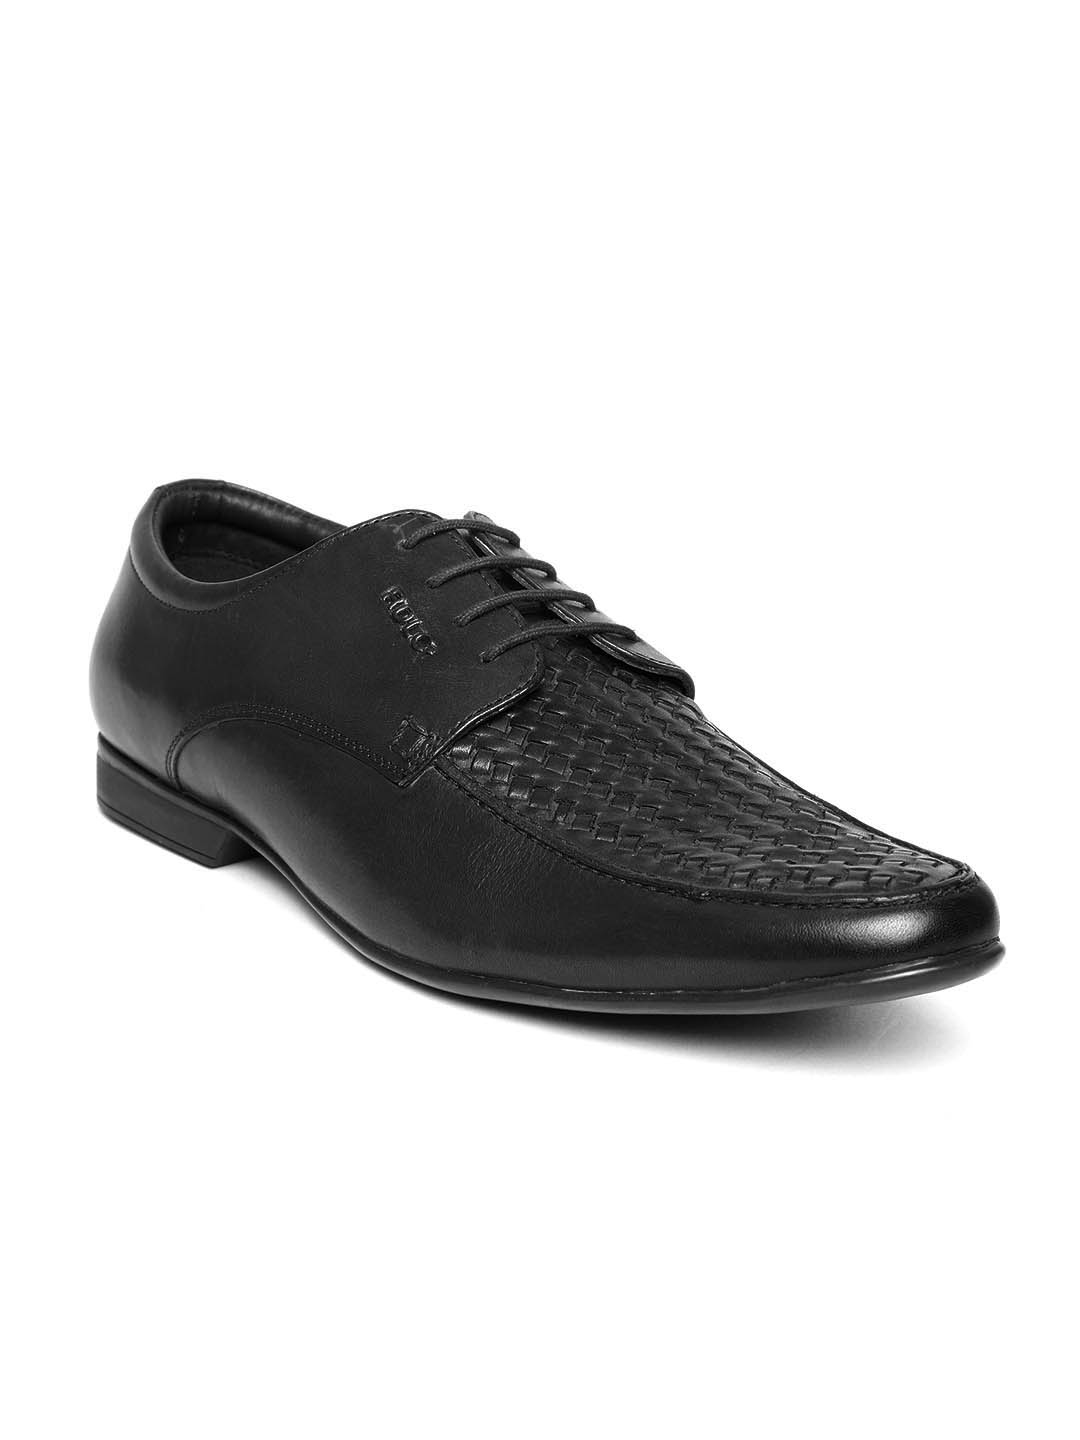 Buy Lee Cooper Men Black Basketweave Genuine Leather Semiformal Shoes ...